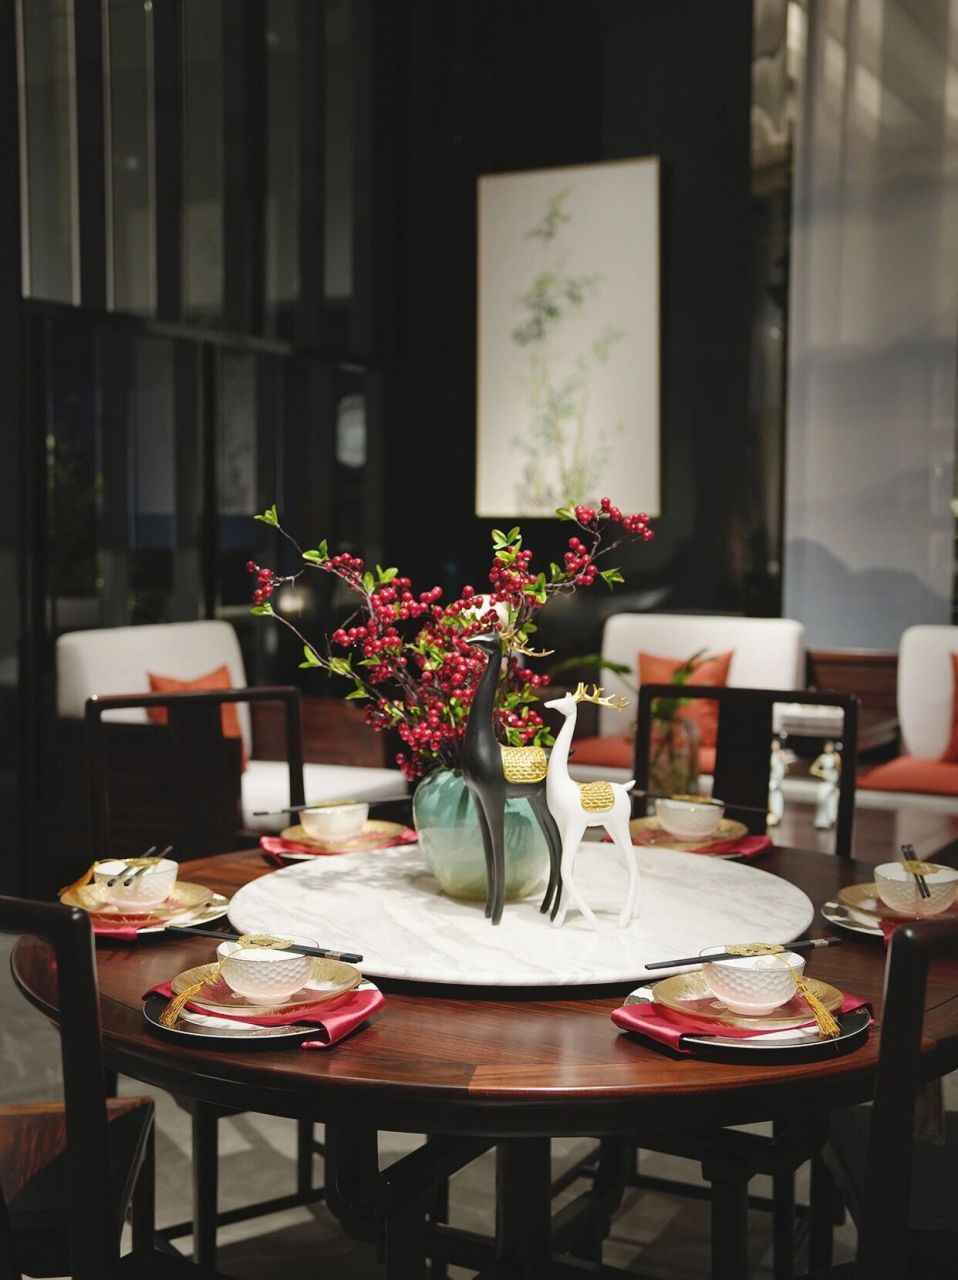 中式餐桌美学丨幸福感爆棚的餐桌布置全攻略 布置出一个高级精致的